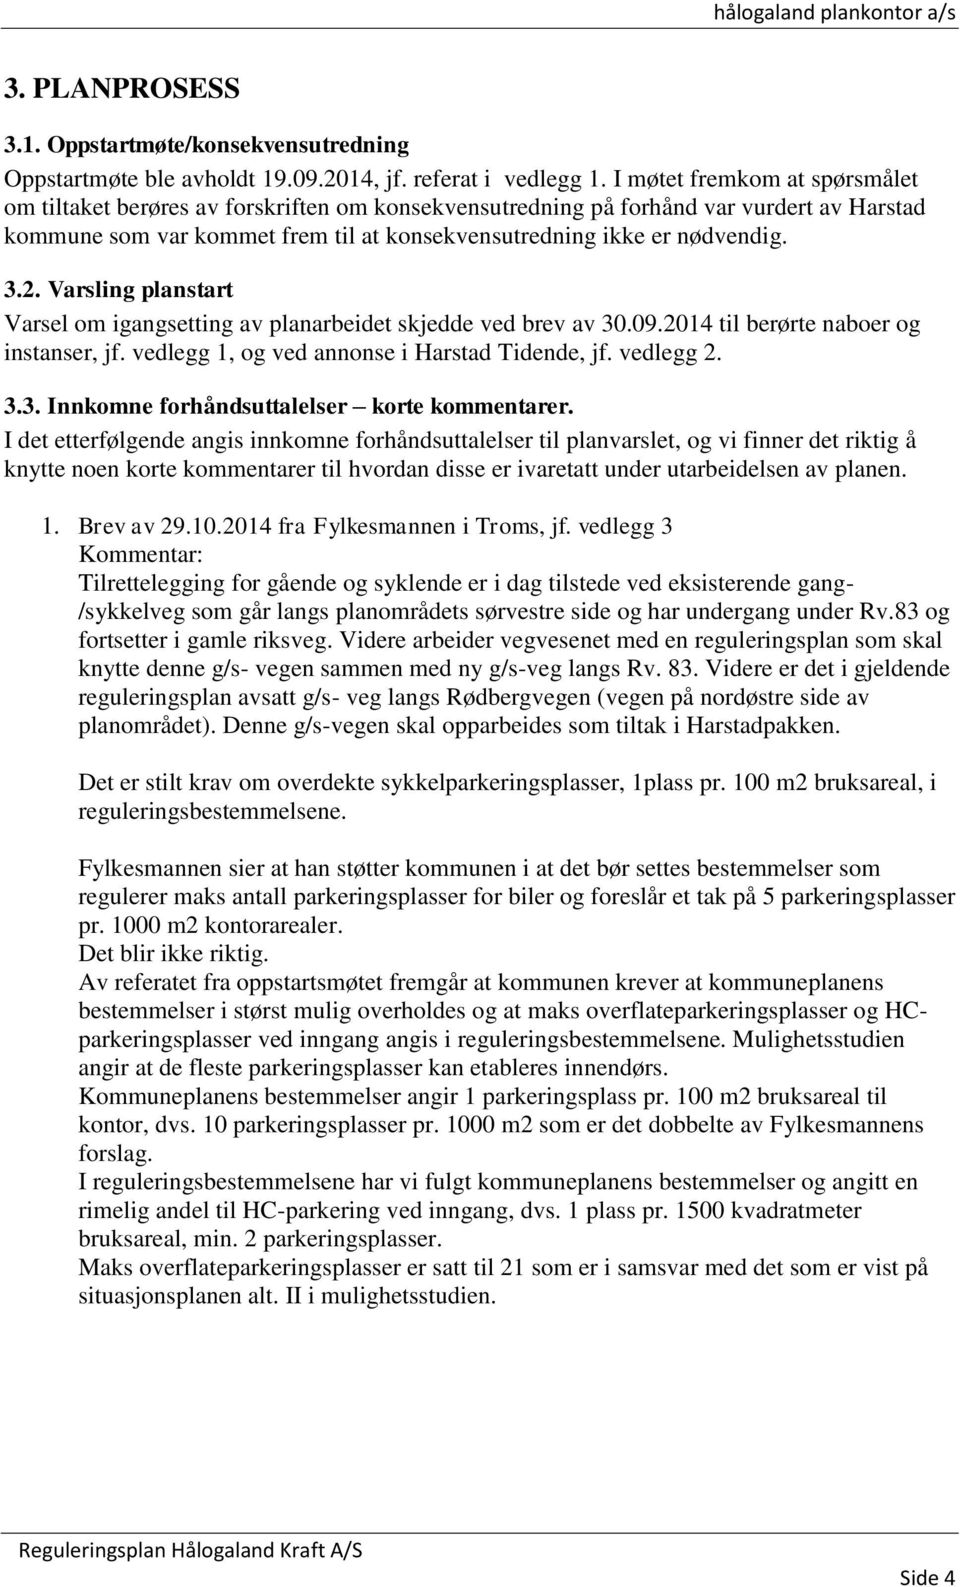 Varsling planstart Varsel om igangsetting av planarbeidet skjedde ved brev av 30.09.2014 til berørte naboer og instanser, jf. vedlegg 1, og ved annonse i Harstad Tidende, jf. vedlegg 2. 3.3. Innkomne forhåndsuttalelser korte kommentarer.